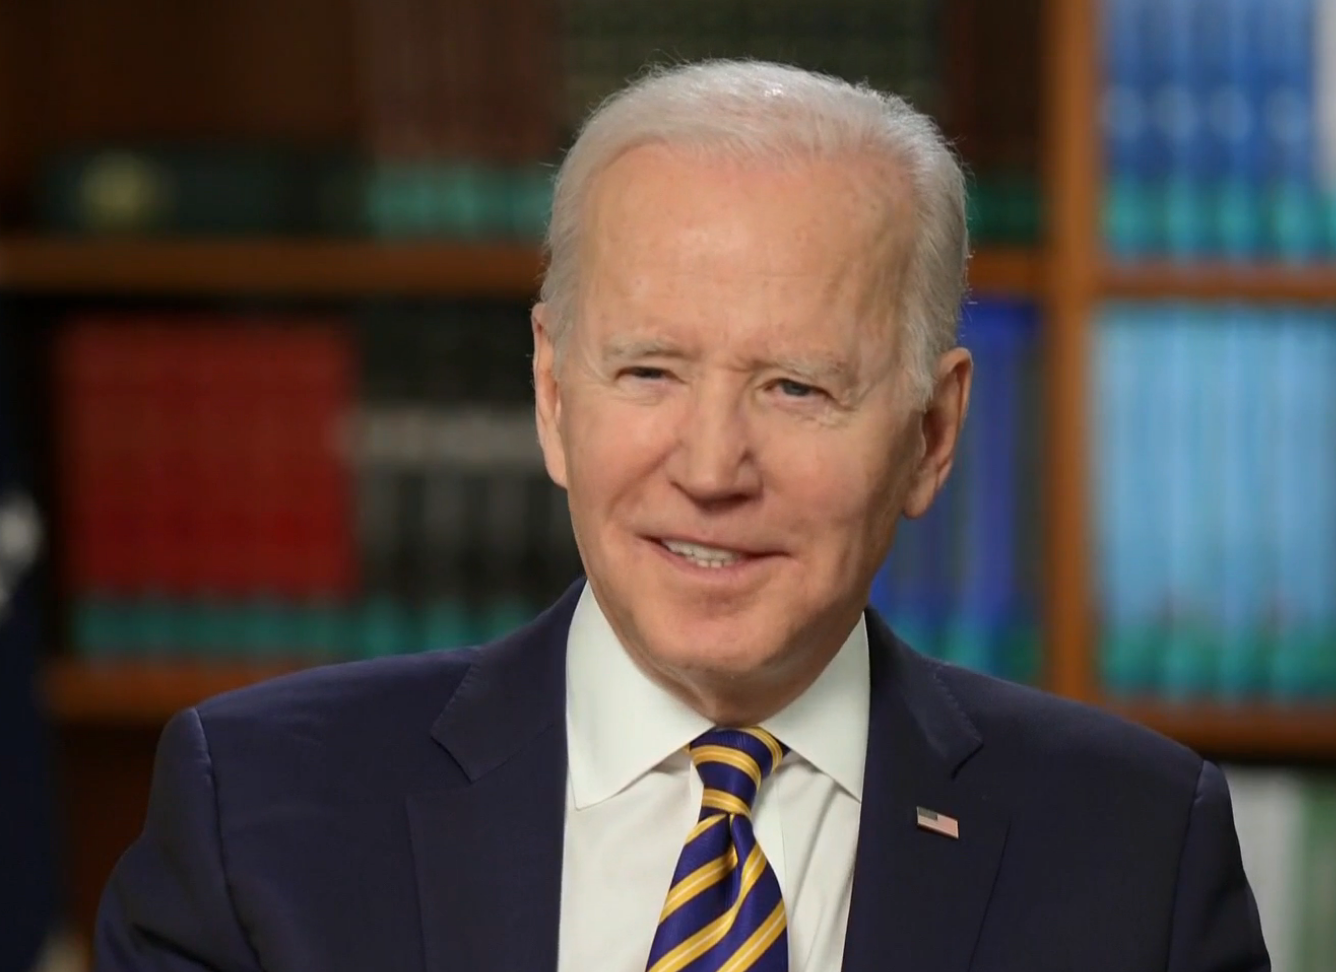 El presidente Biden habló de las libertades en una entrevista con NBC